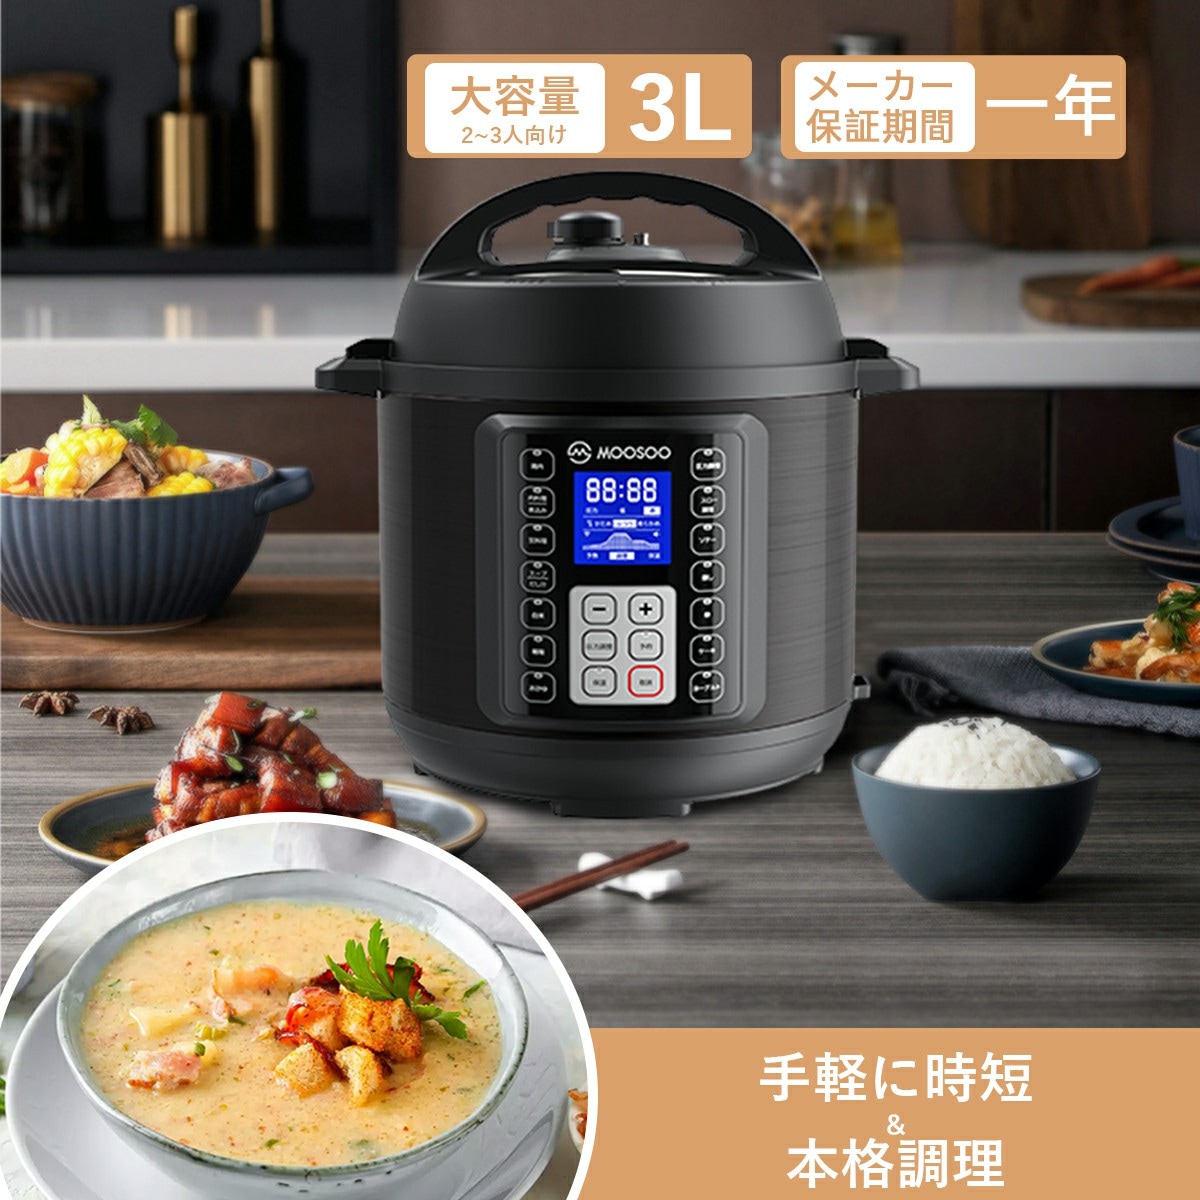 新品未使用の圧力鍋❣️ - キッチン家電